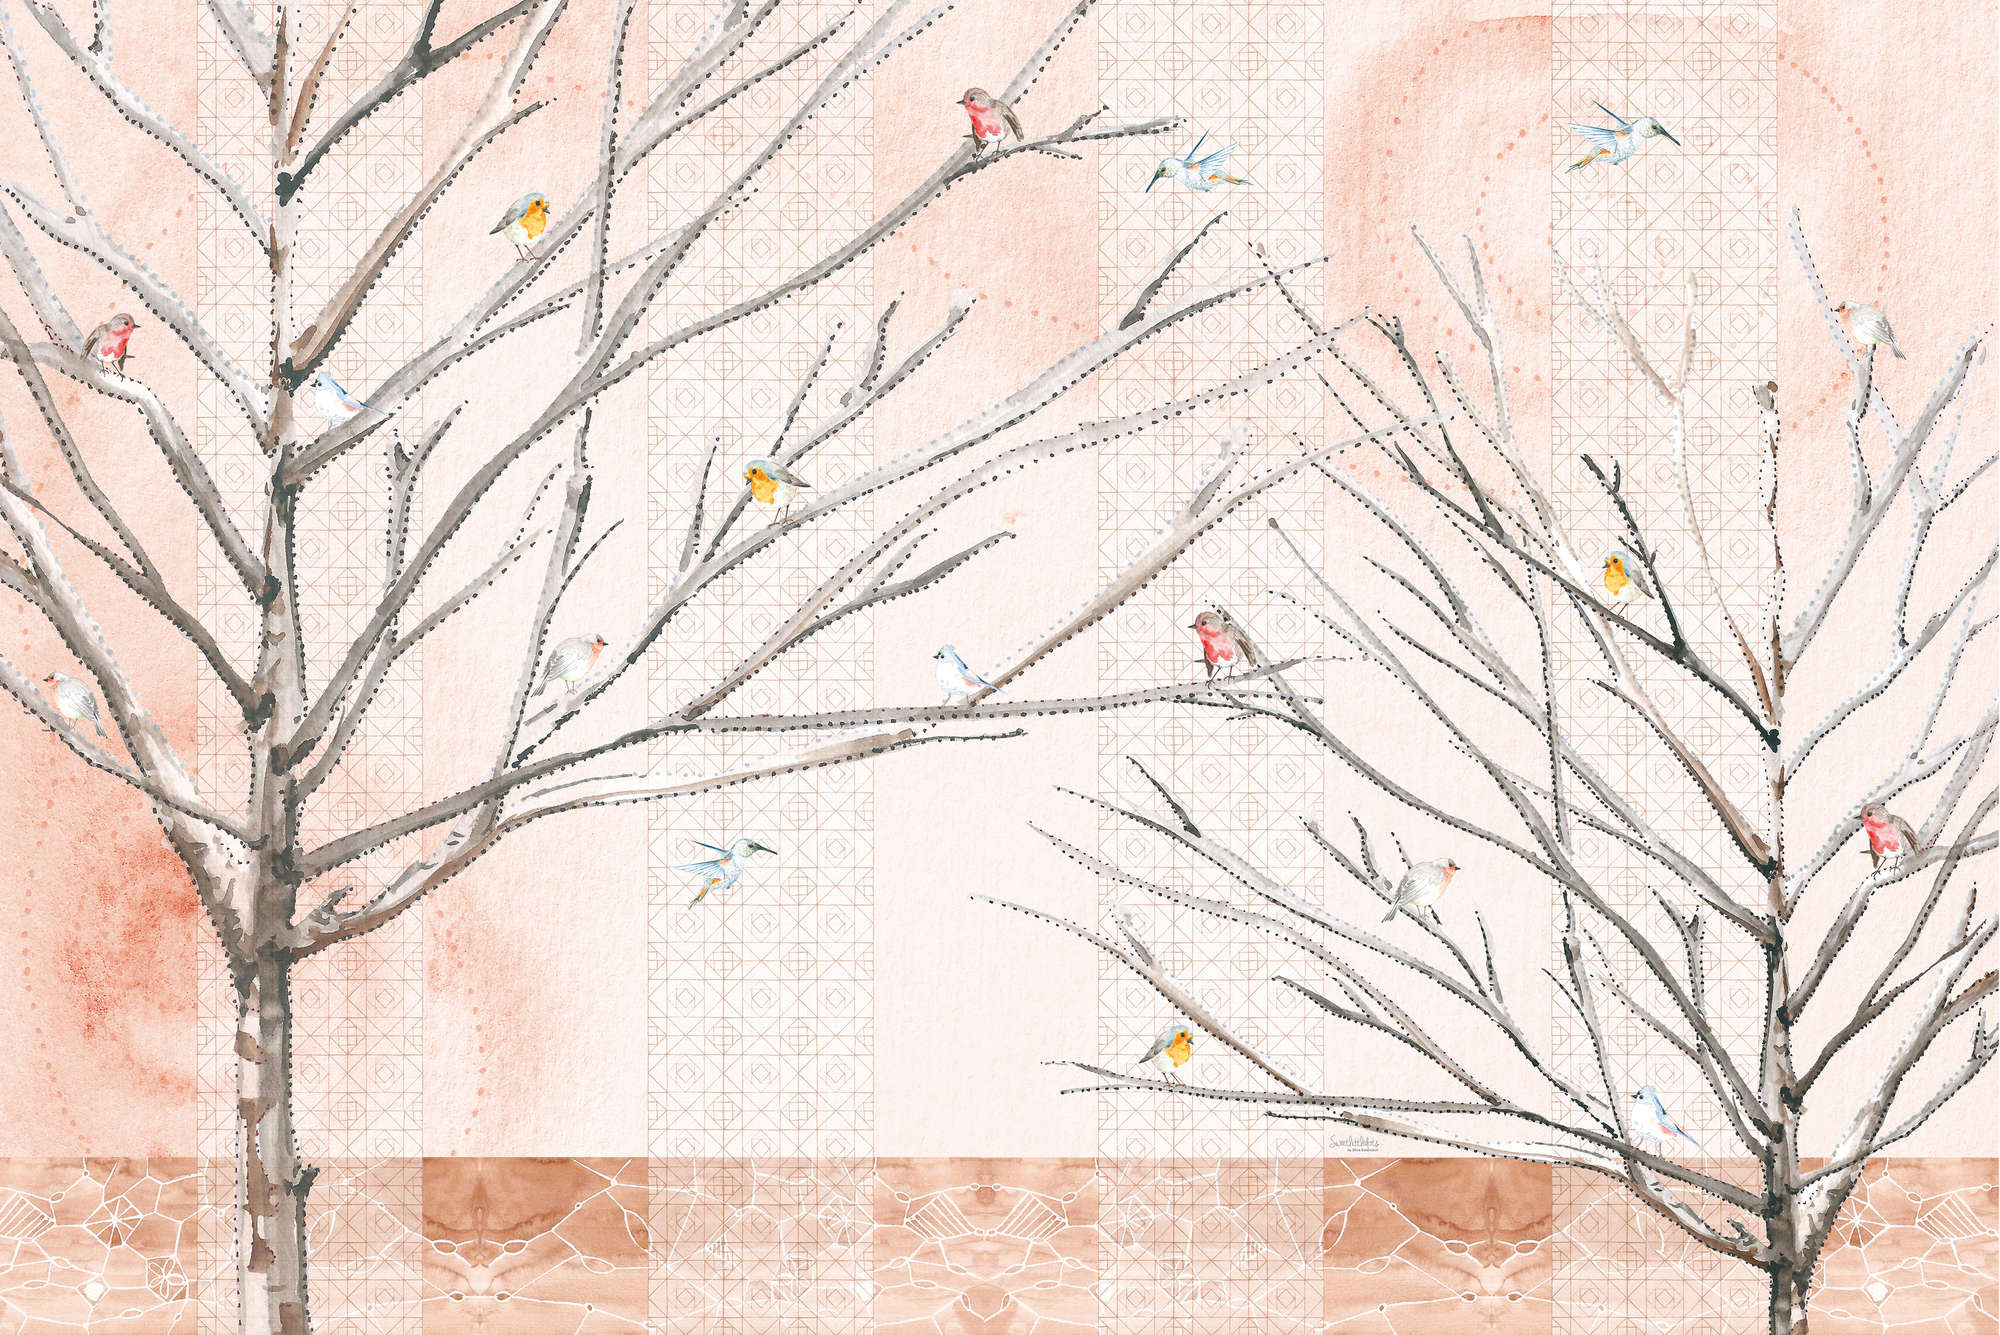             Artistiek Behang Bomen met Vogels in Beige en Bruin op Matte Gladde Vliesstof
        